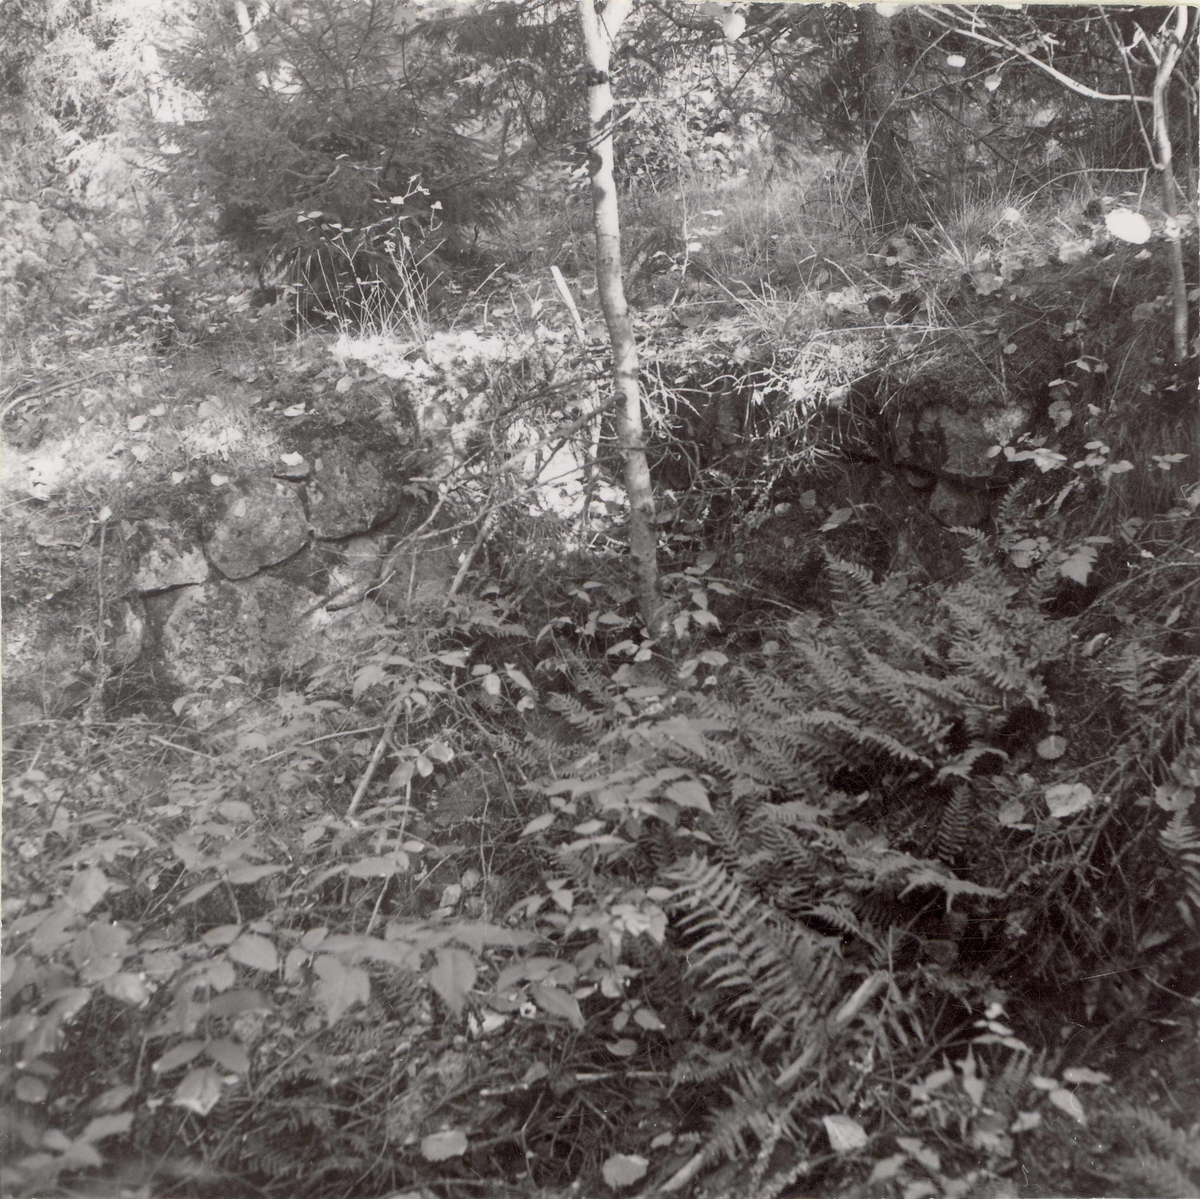 Rester av jordkula i Brudhyltan.

Foto: Gunnel Forsberg, oktober 1965.